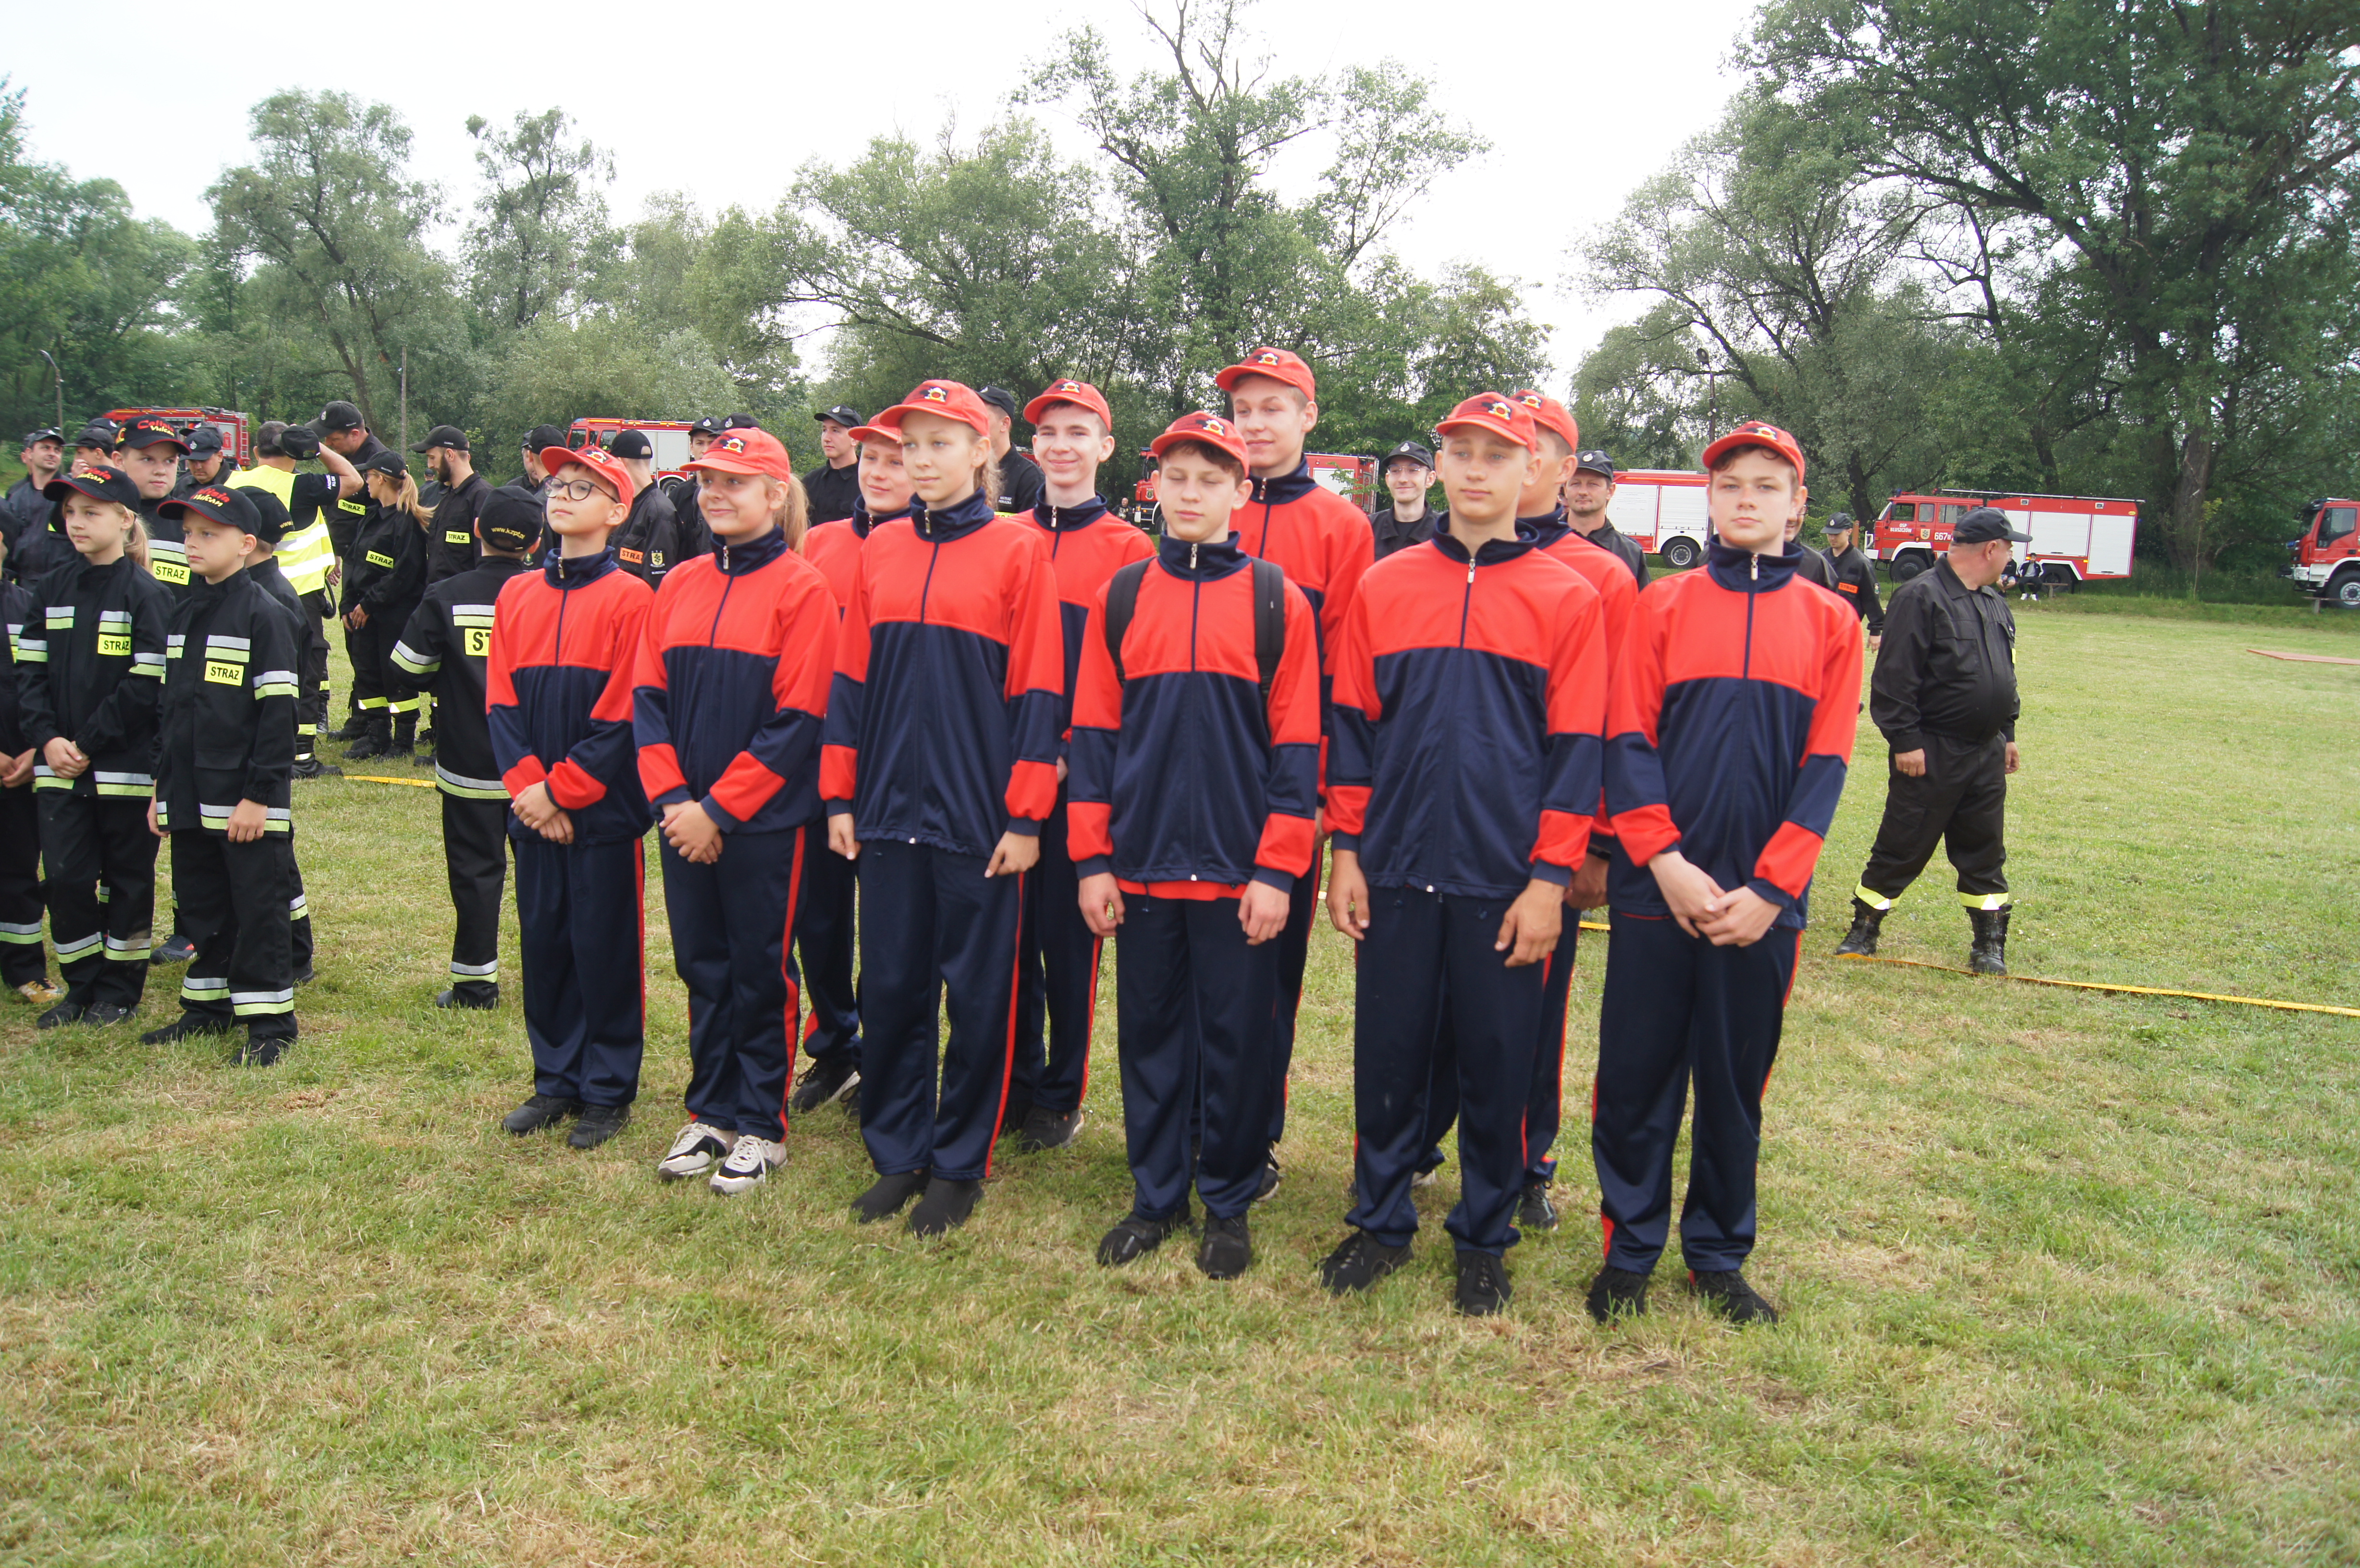 W kategorii młodzieżowych drużyn pożarniczych pierwsze miejsce zdobyła drużyna z OSP Czyżowice